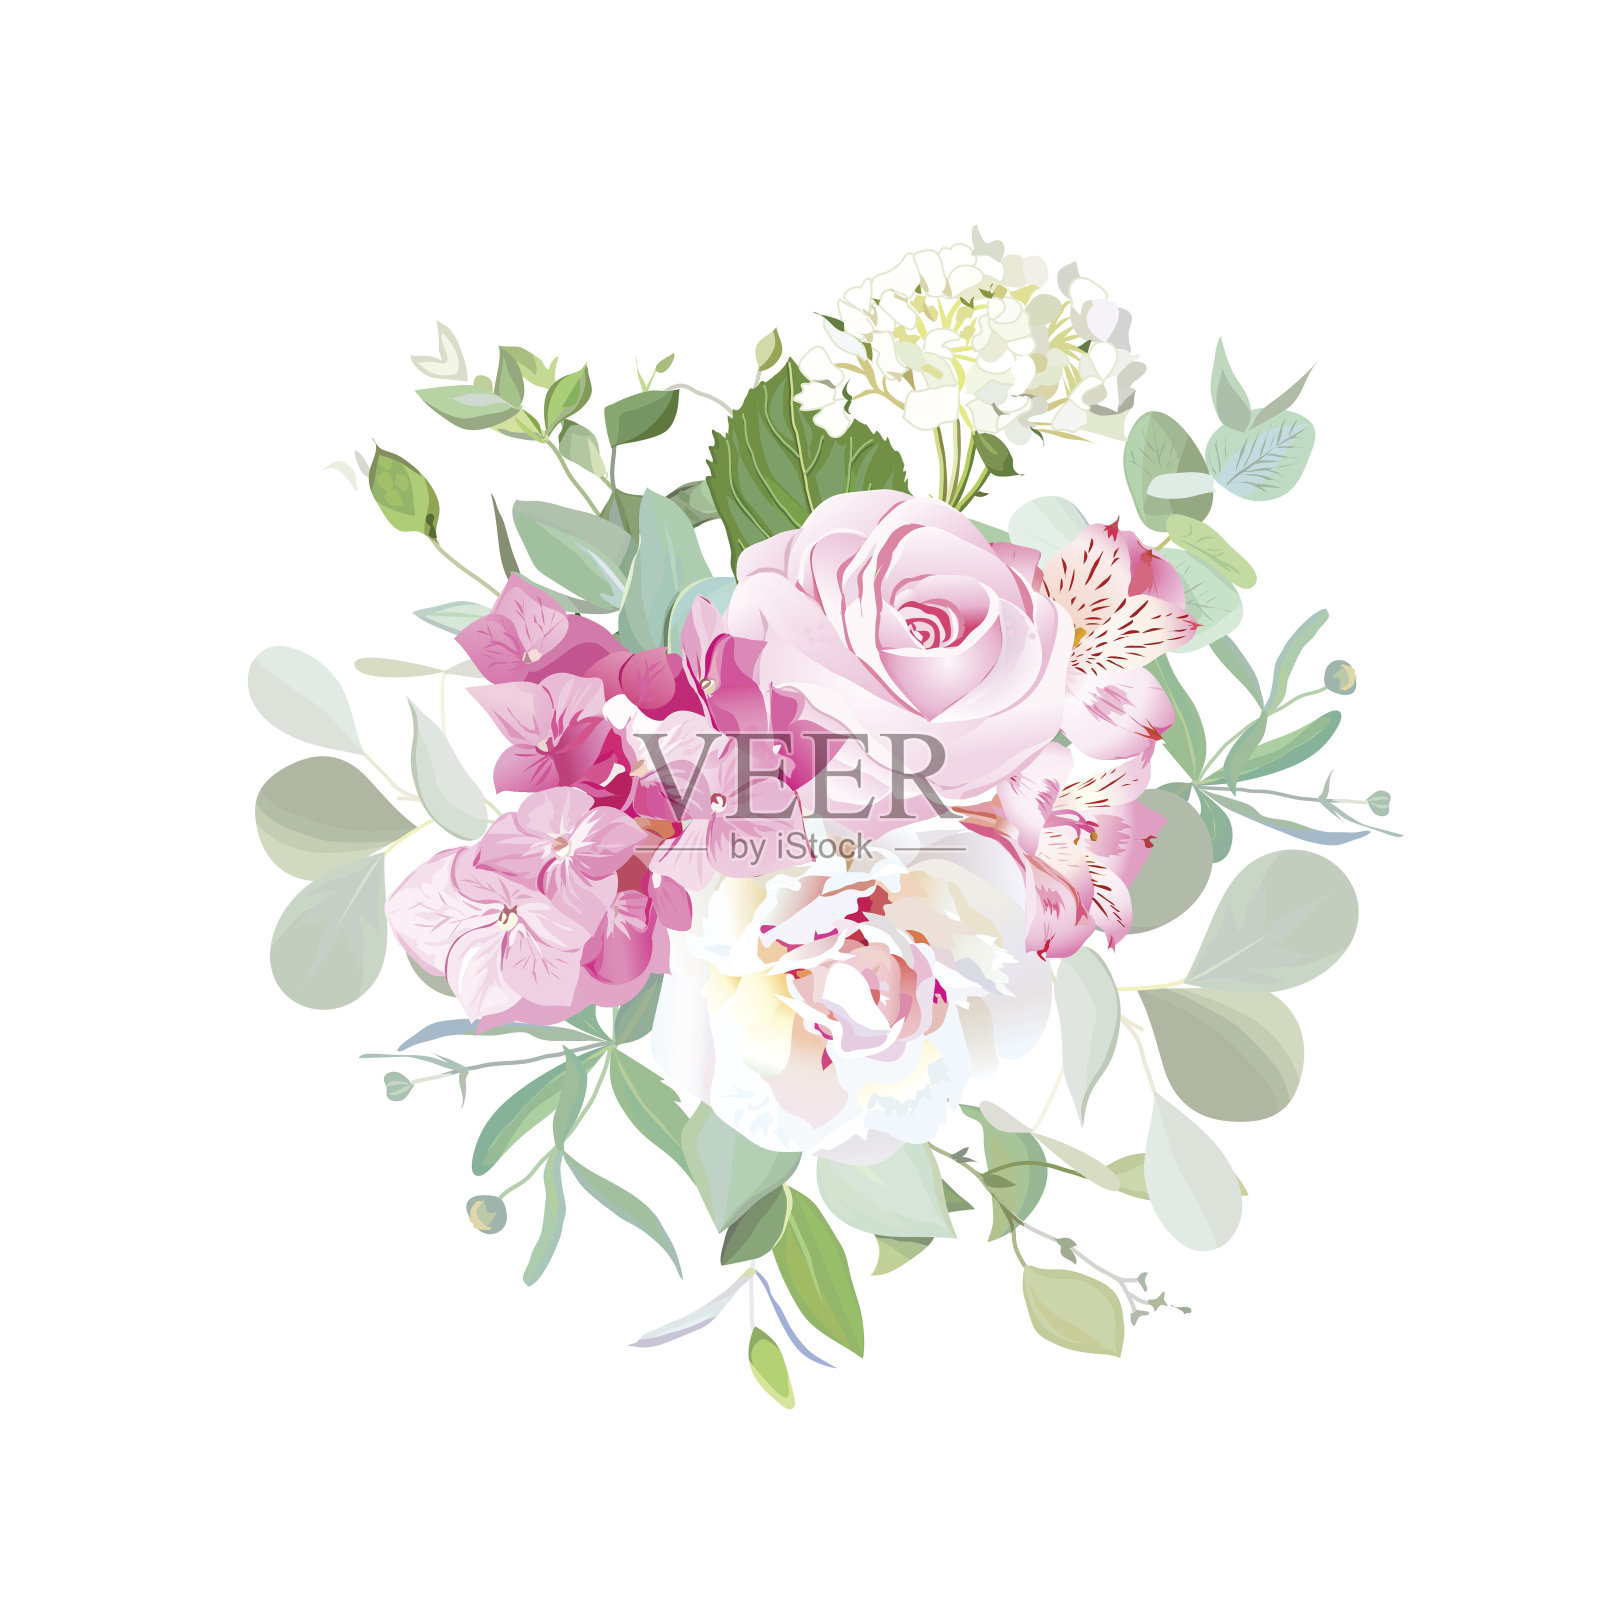 玫瑰、牡丹、绣球花、紫花百合、桉树花束插画图片素材